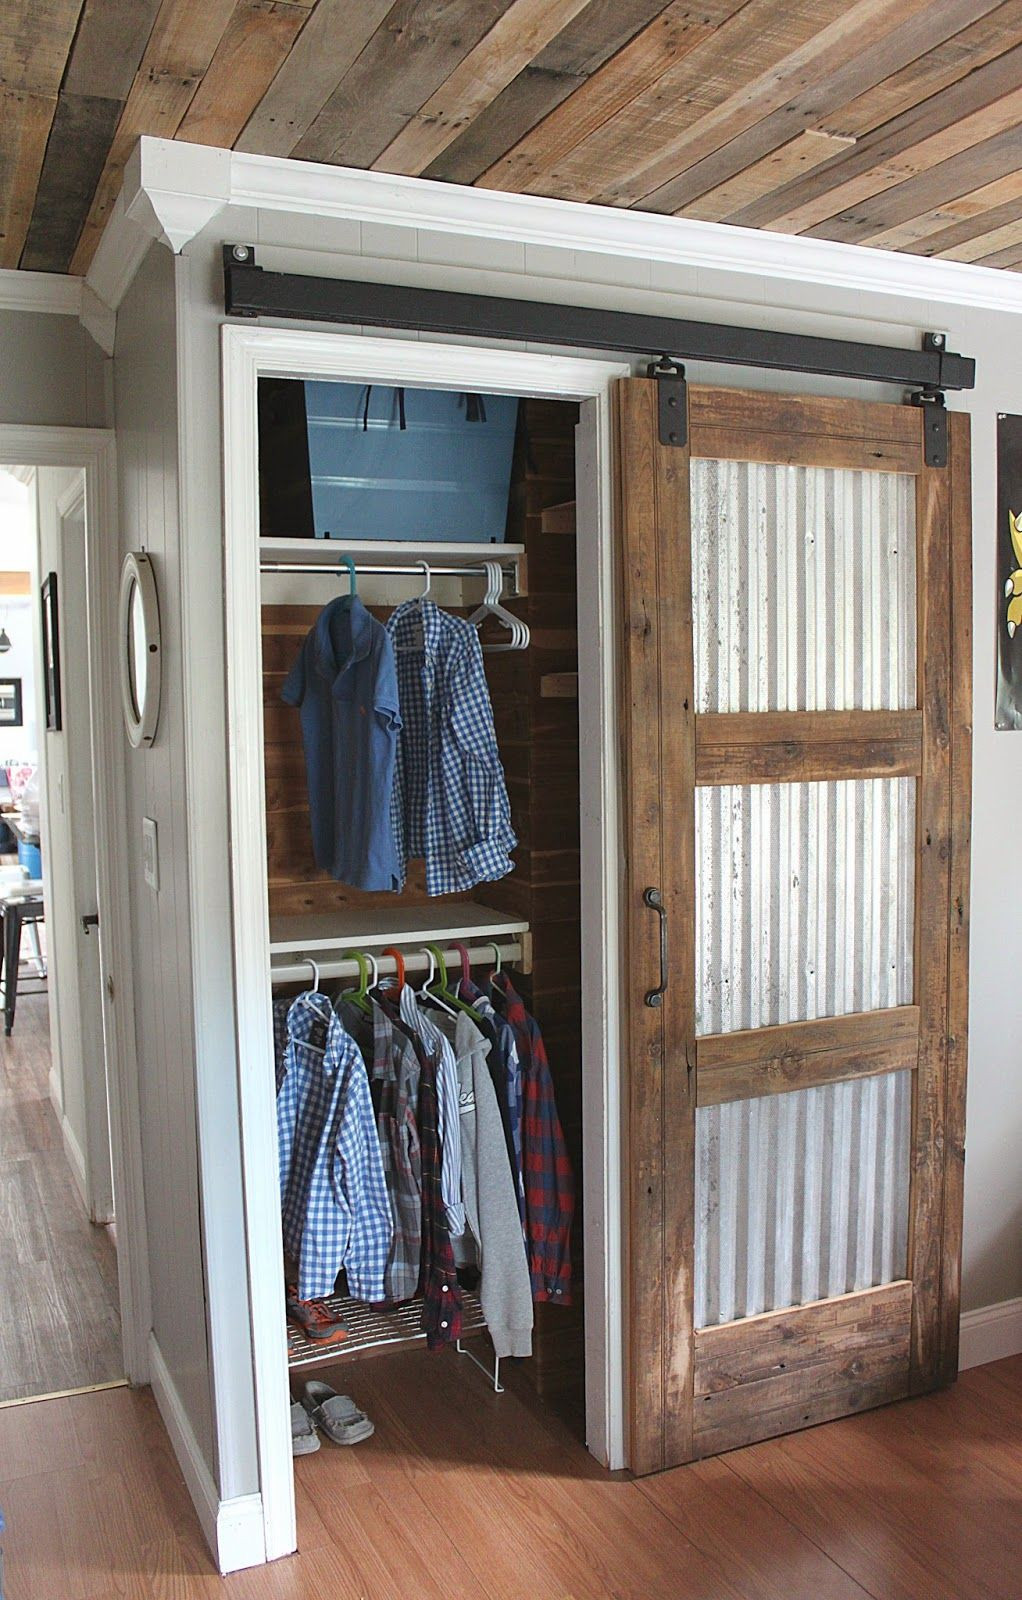 Best ideas about Barn Door Closet DIY
. Save or Pin 20 DIY Barn Door Tutorials Remodel Now.